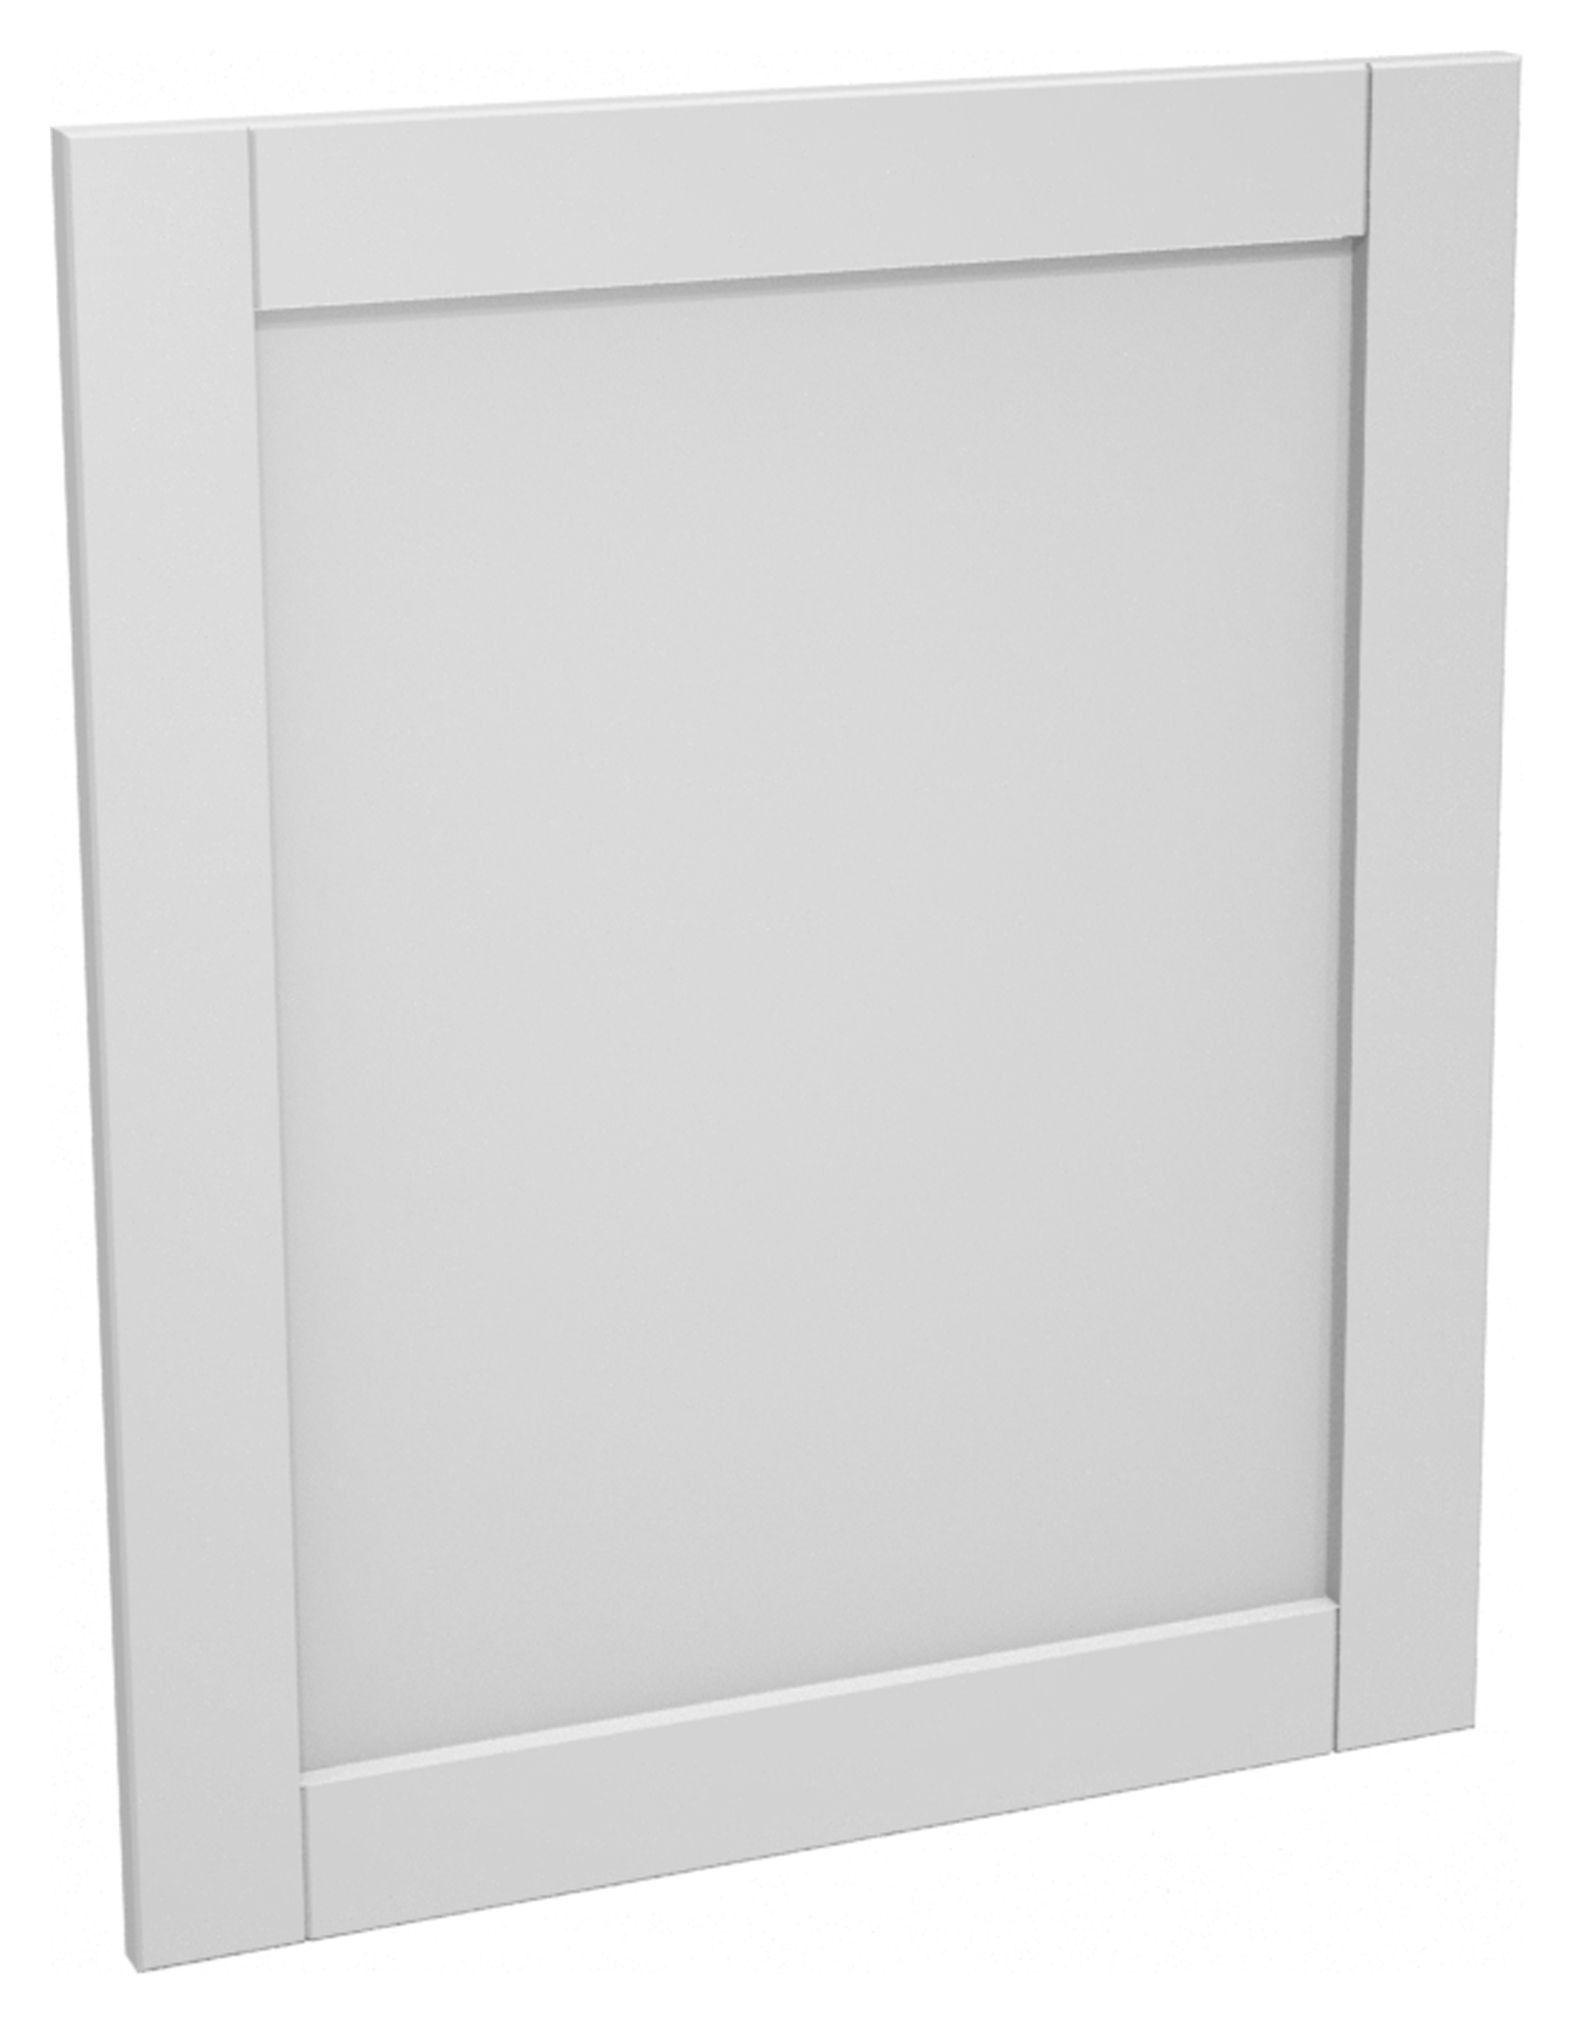 Image of Wickes Ohio Grey Shaker Appliance Door (B) - 600 x 731mm